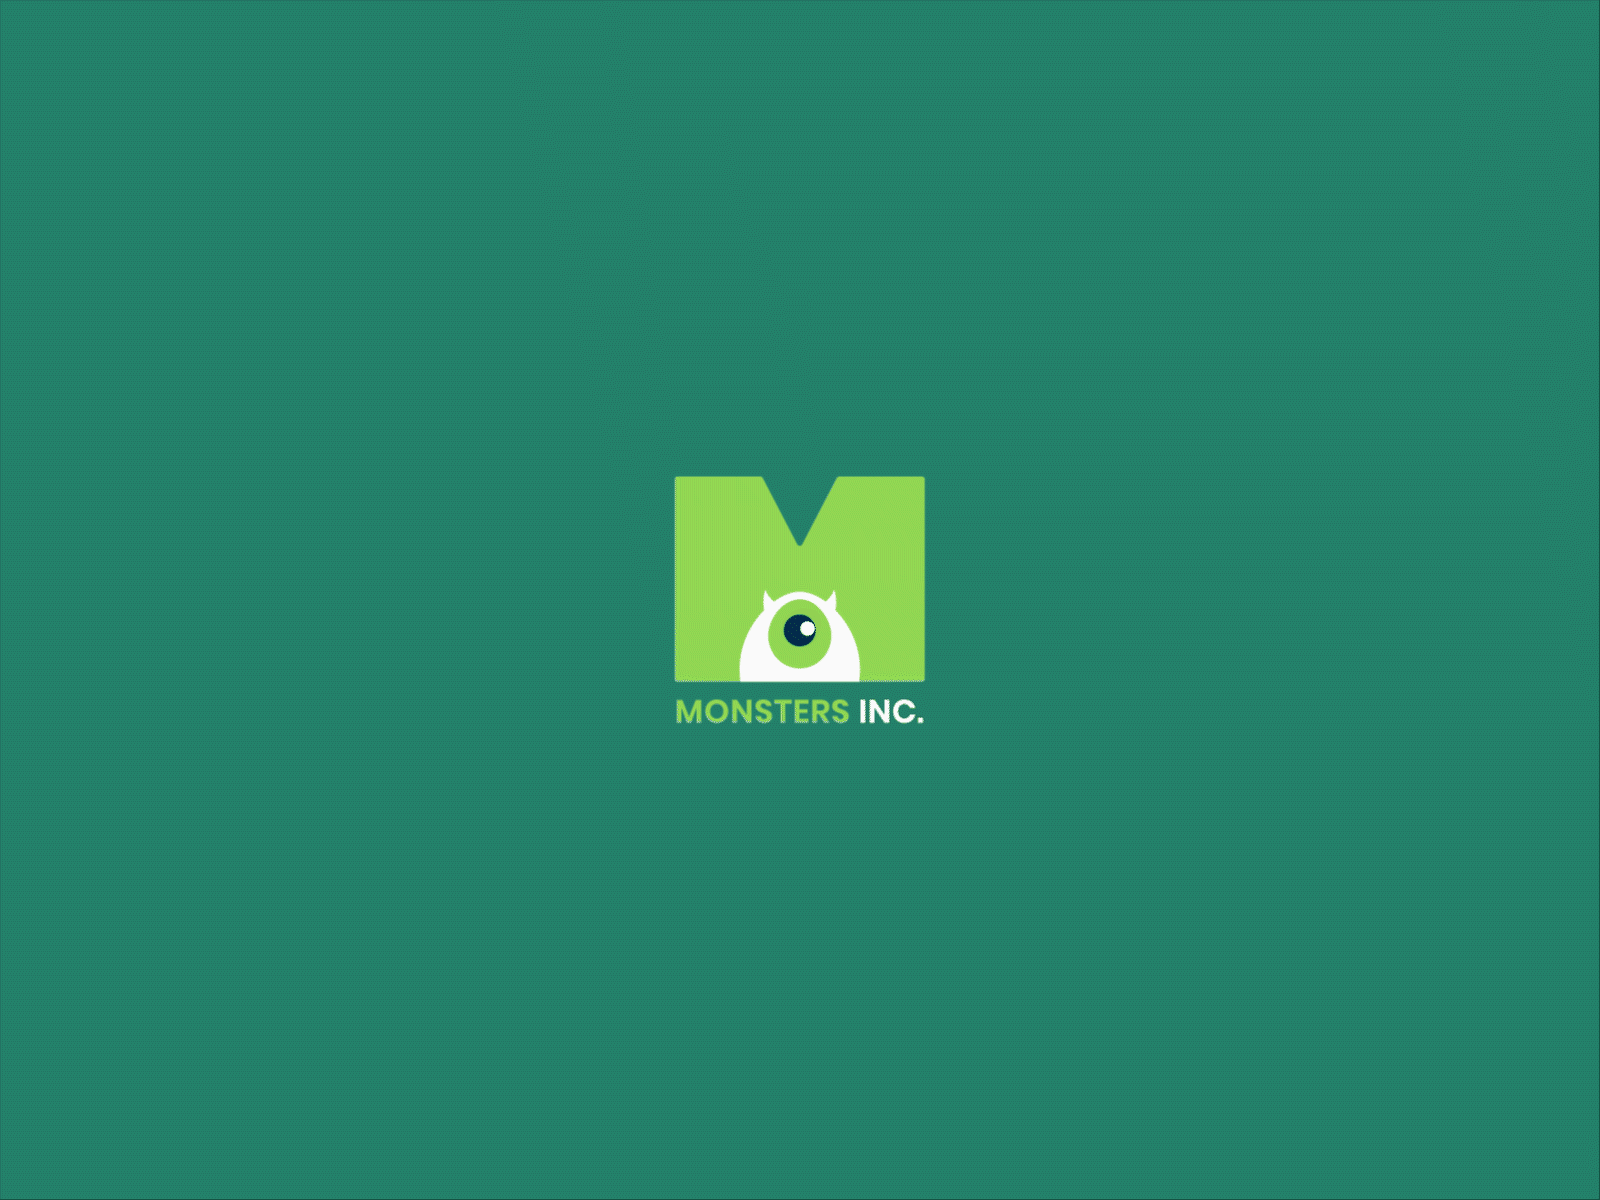 Monster Inc. logo